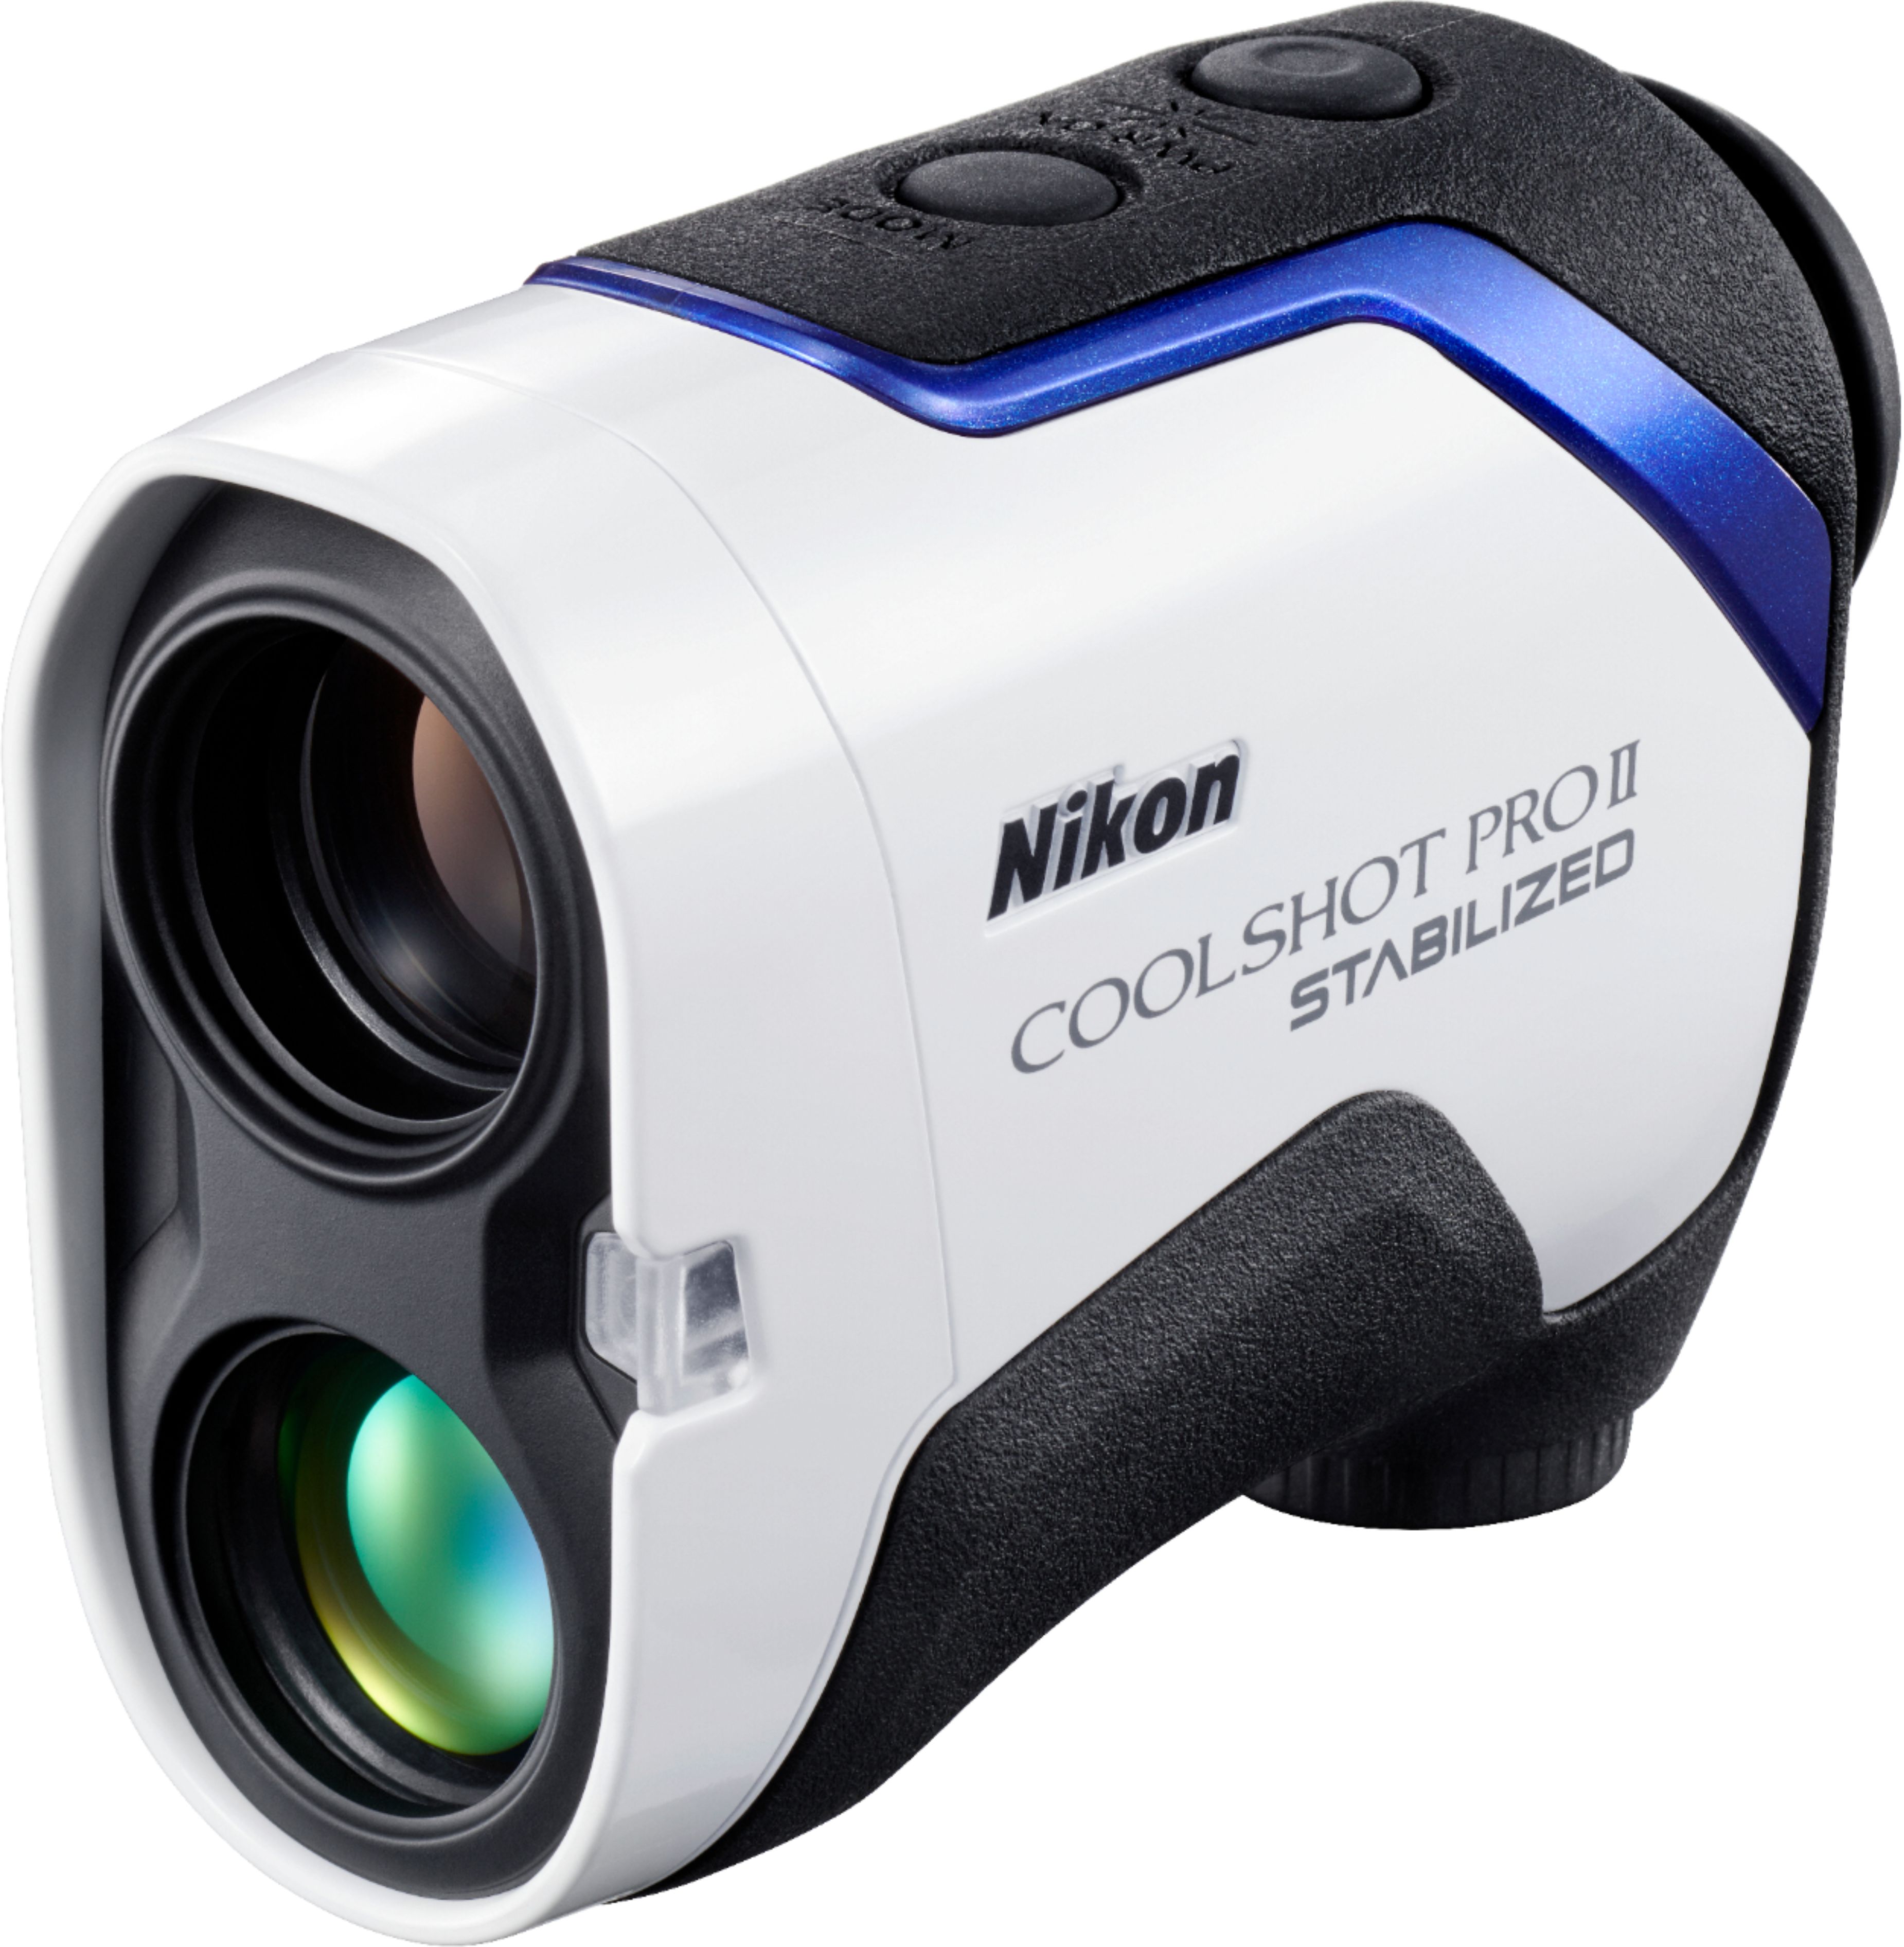 Best Buy: Nikon Coolshot ProII Stabilized Golf Laser Rangefinder